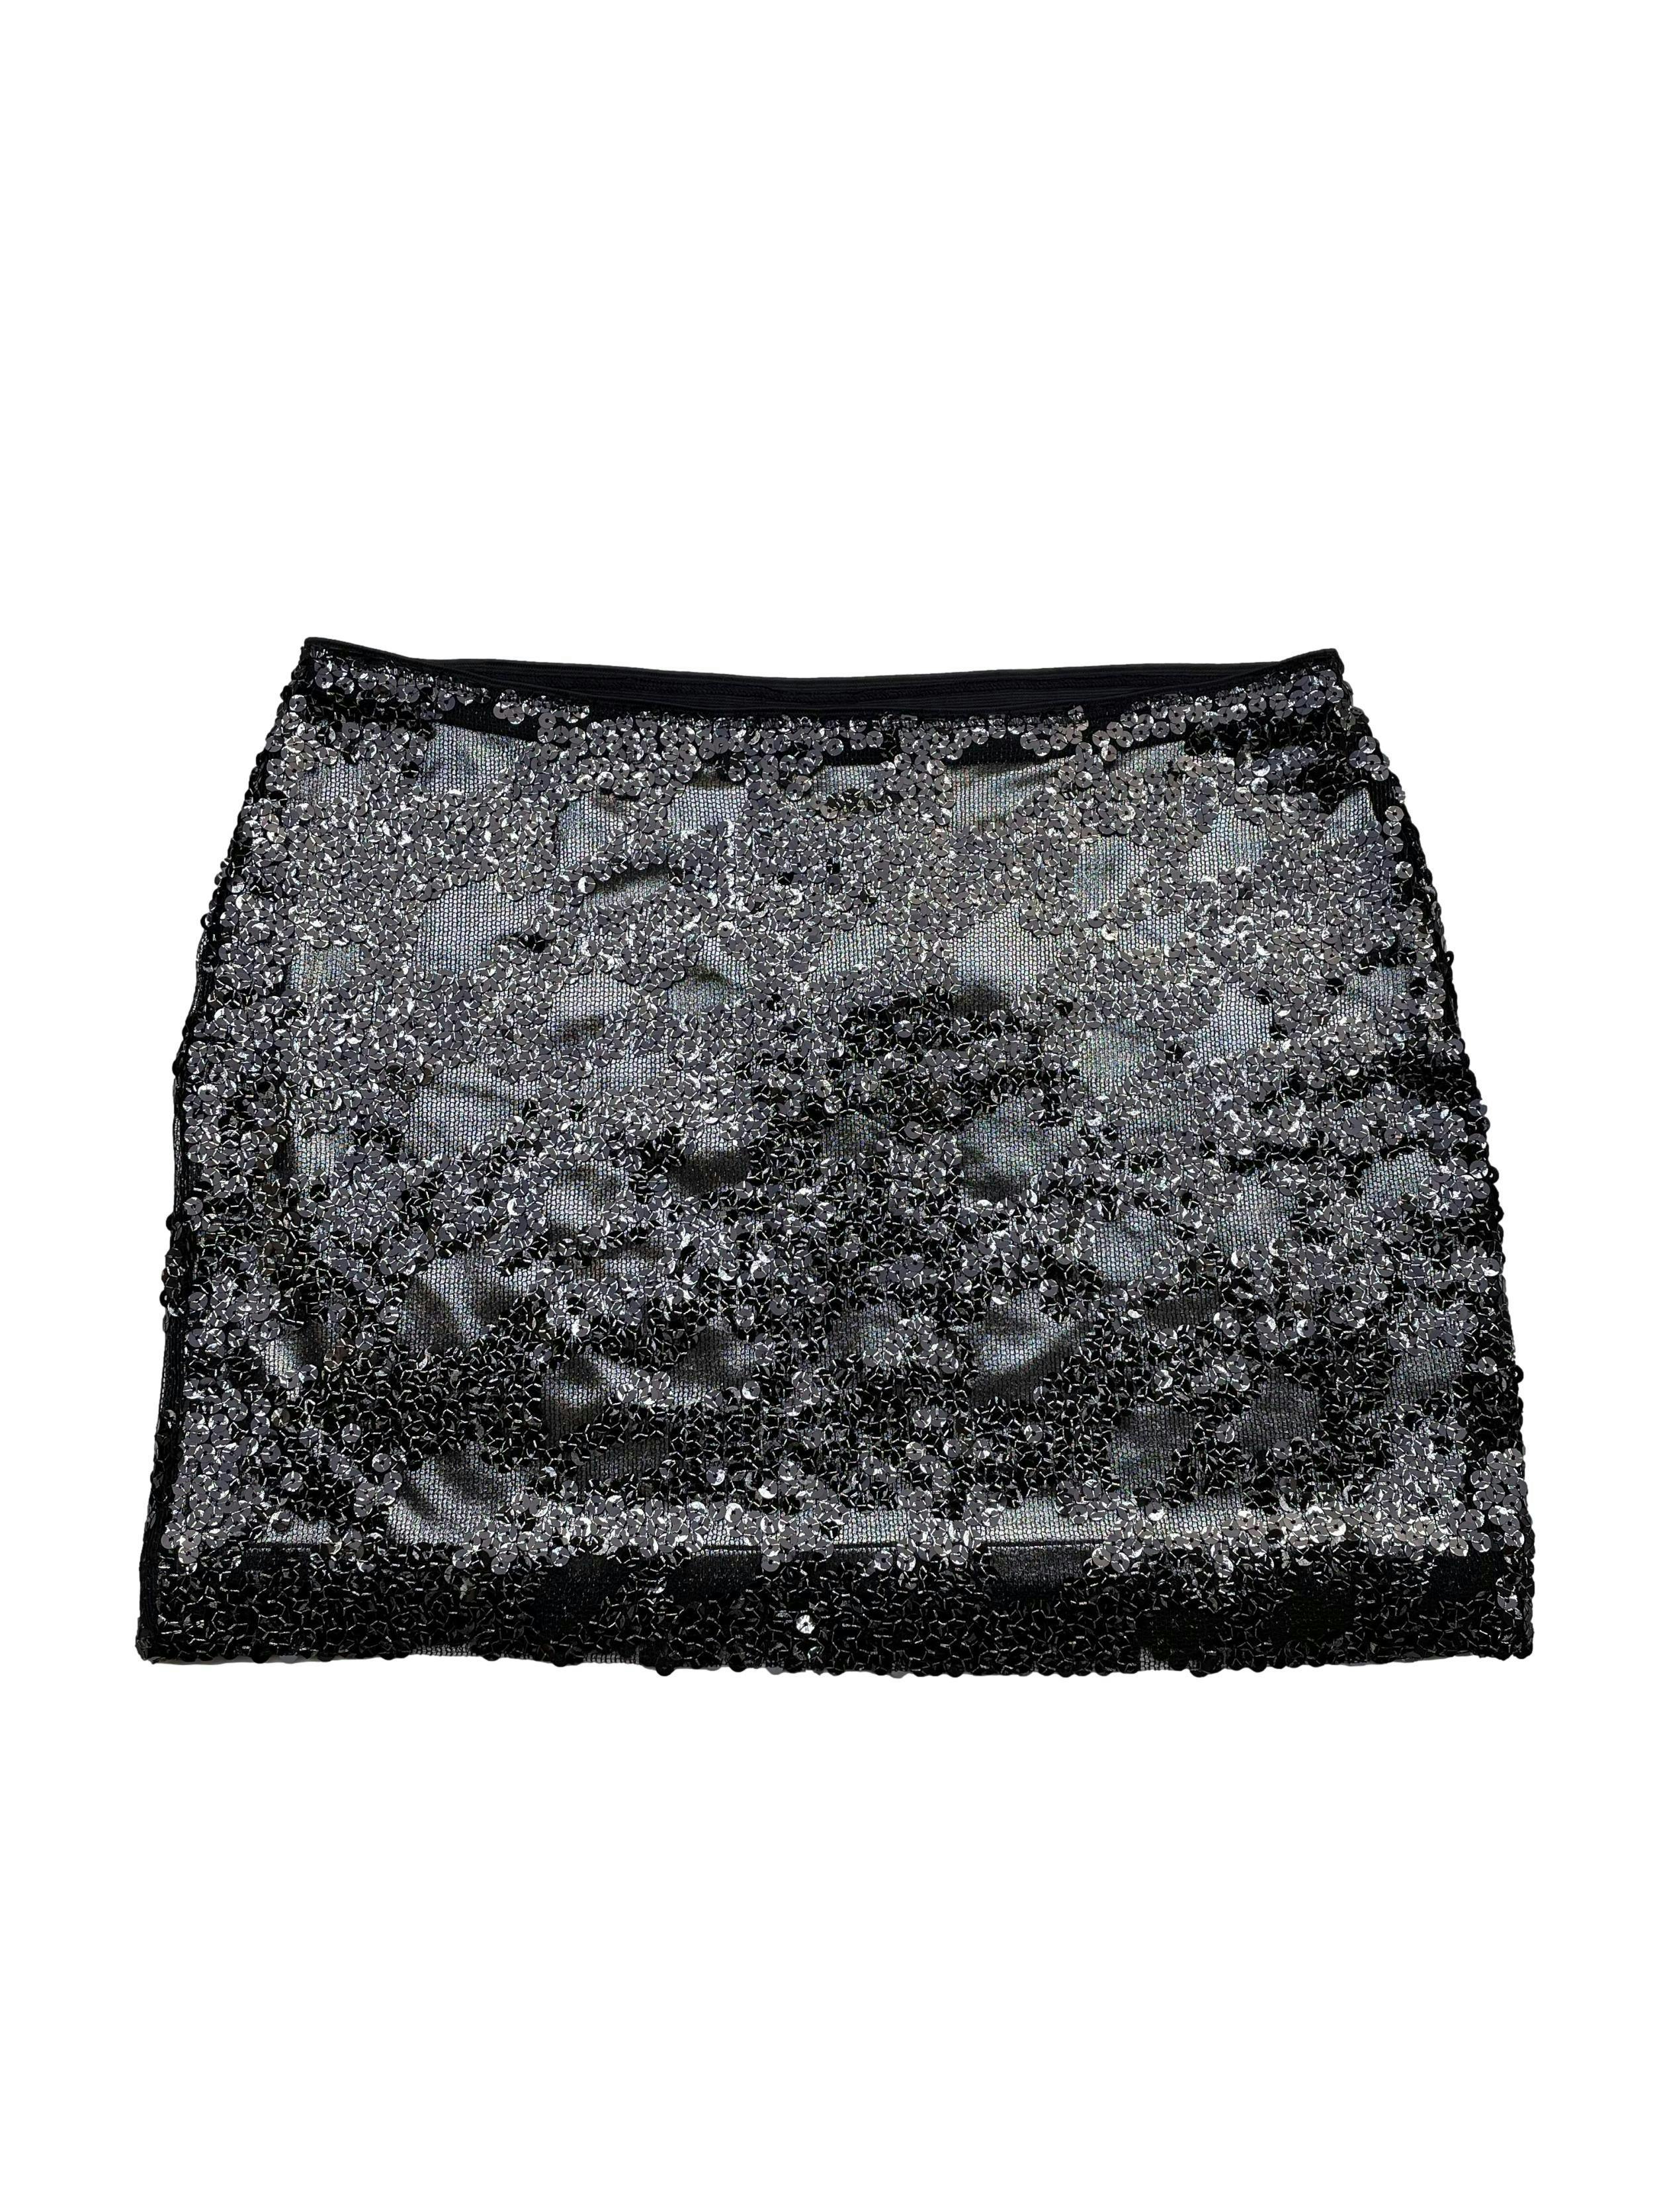 Falda Express de mesh negro con mostacillas plata/negro, forro stretch plateado, alto medio. Cintura 80cm Largo 38cm. Nueva con etiqueta, precio original S/ 189